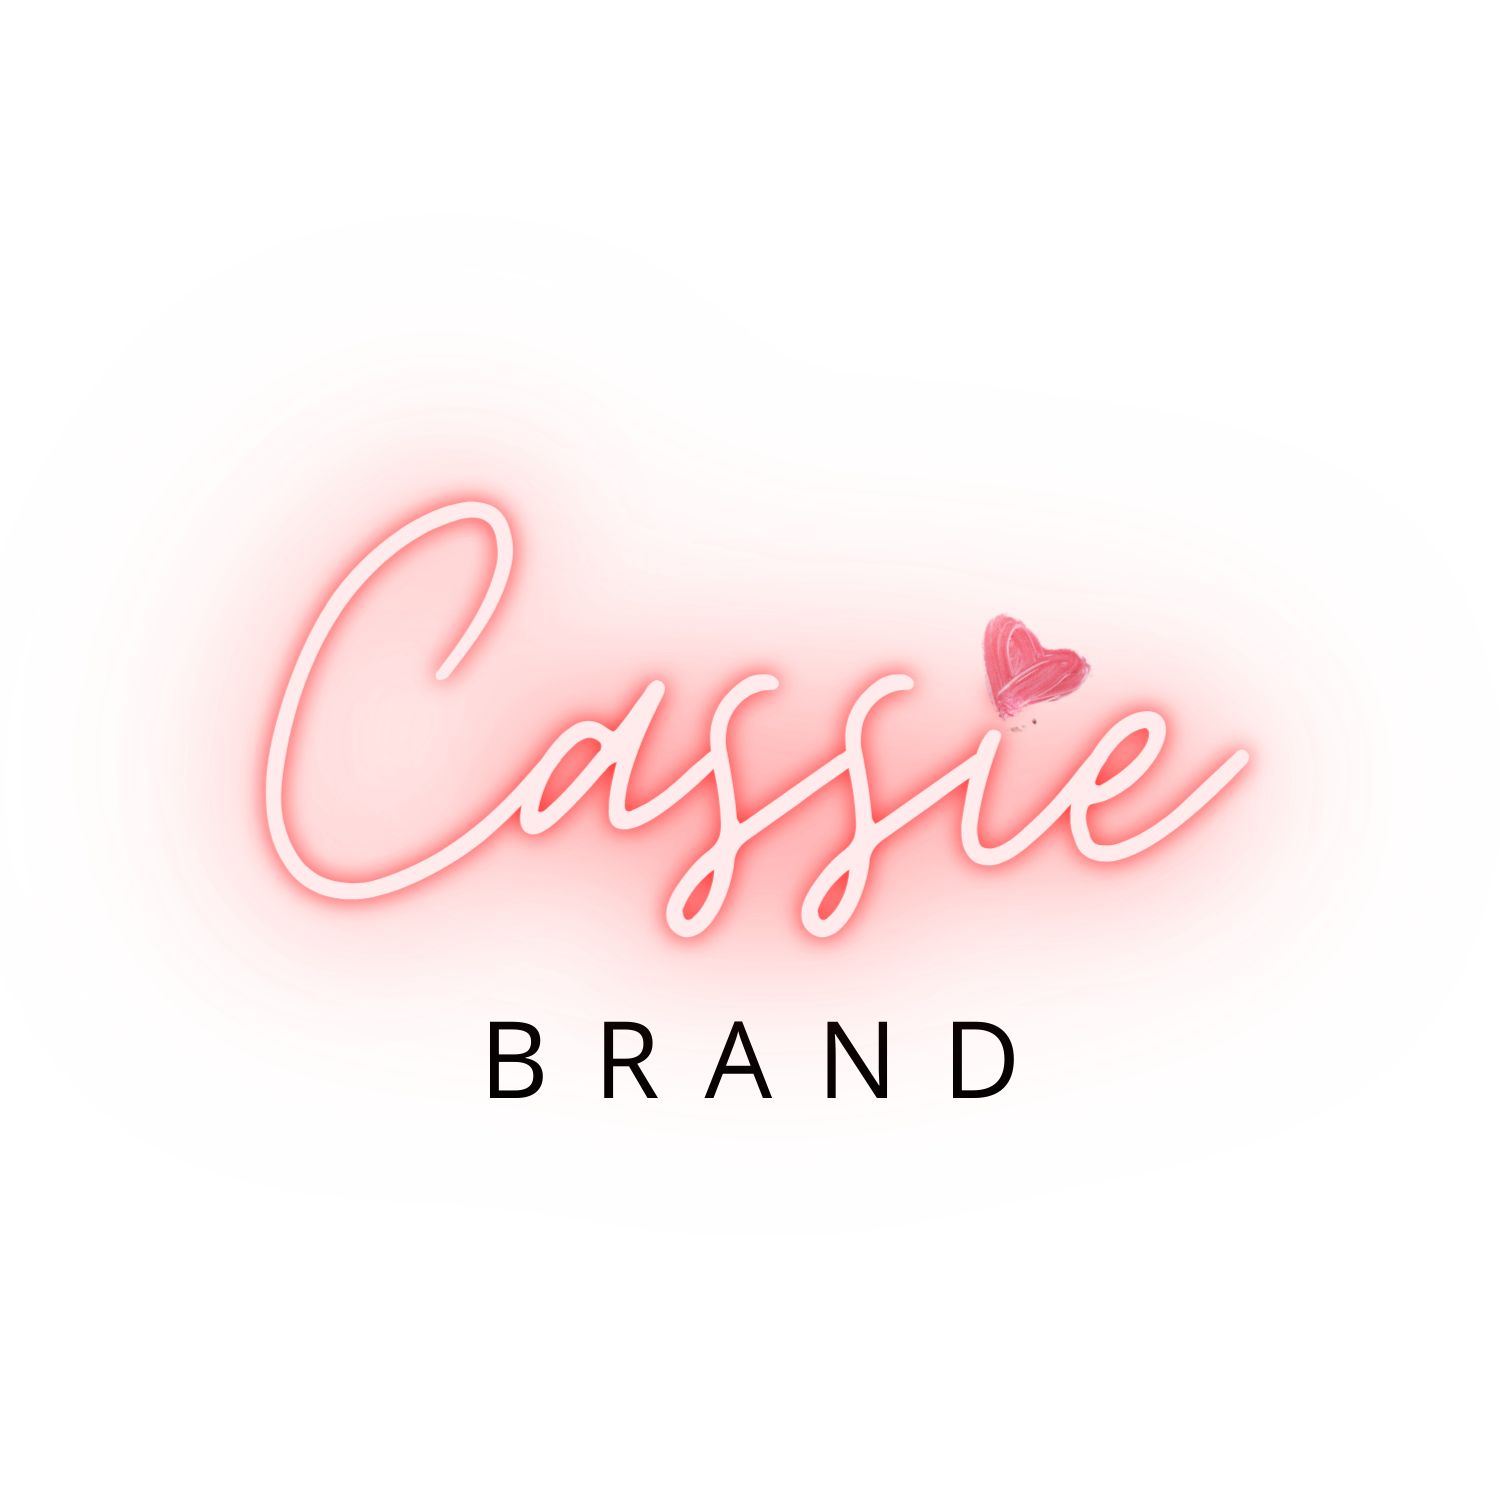 Cassie brand